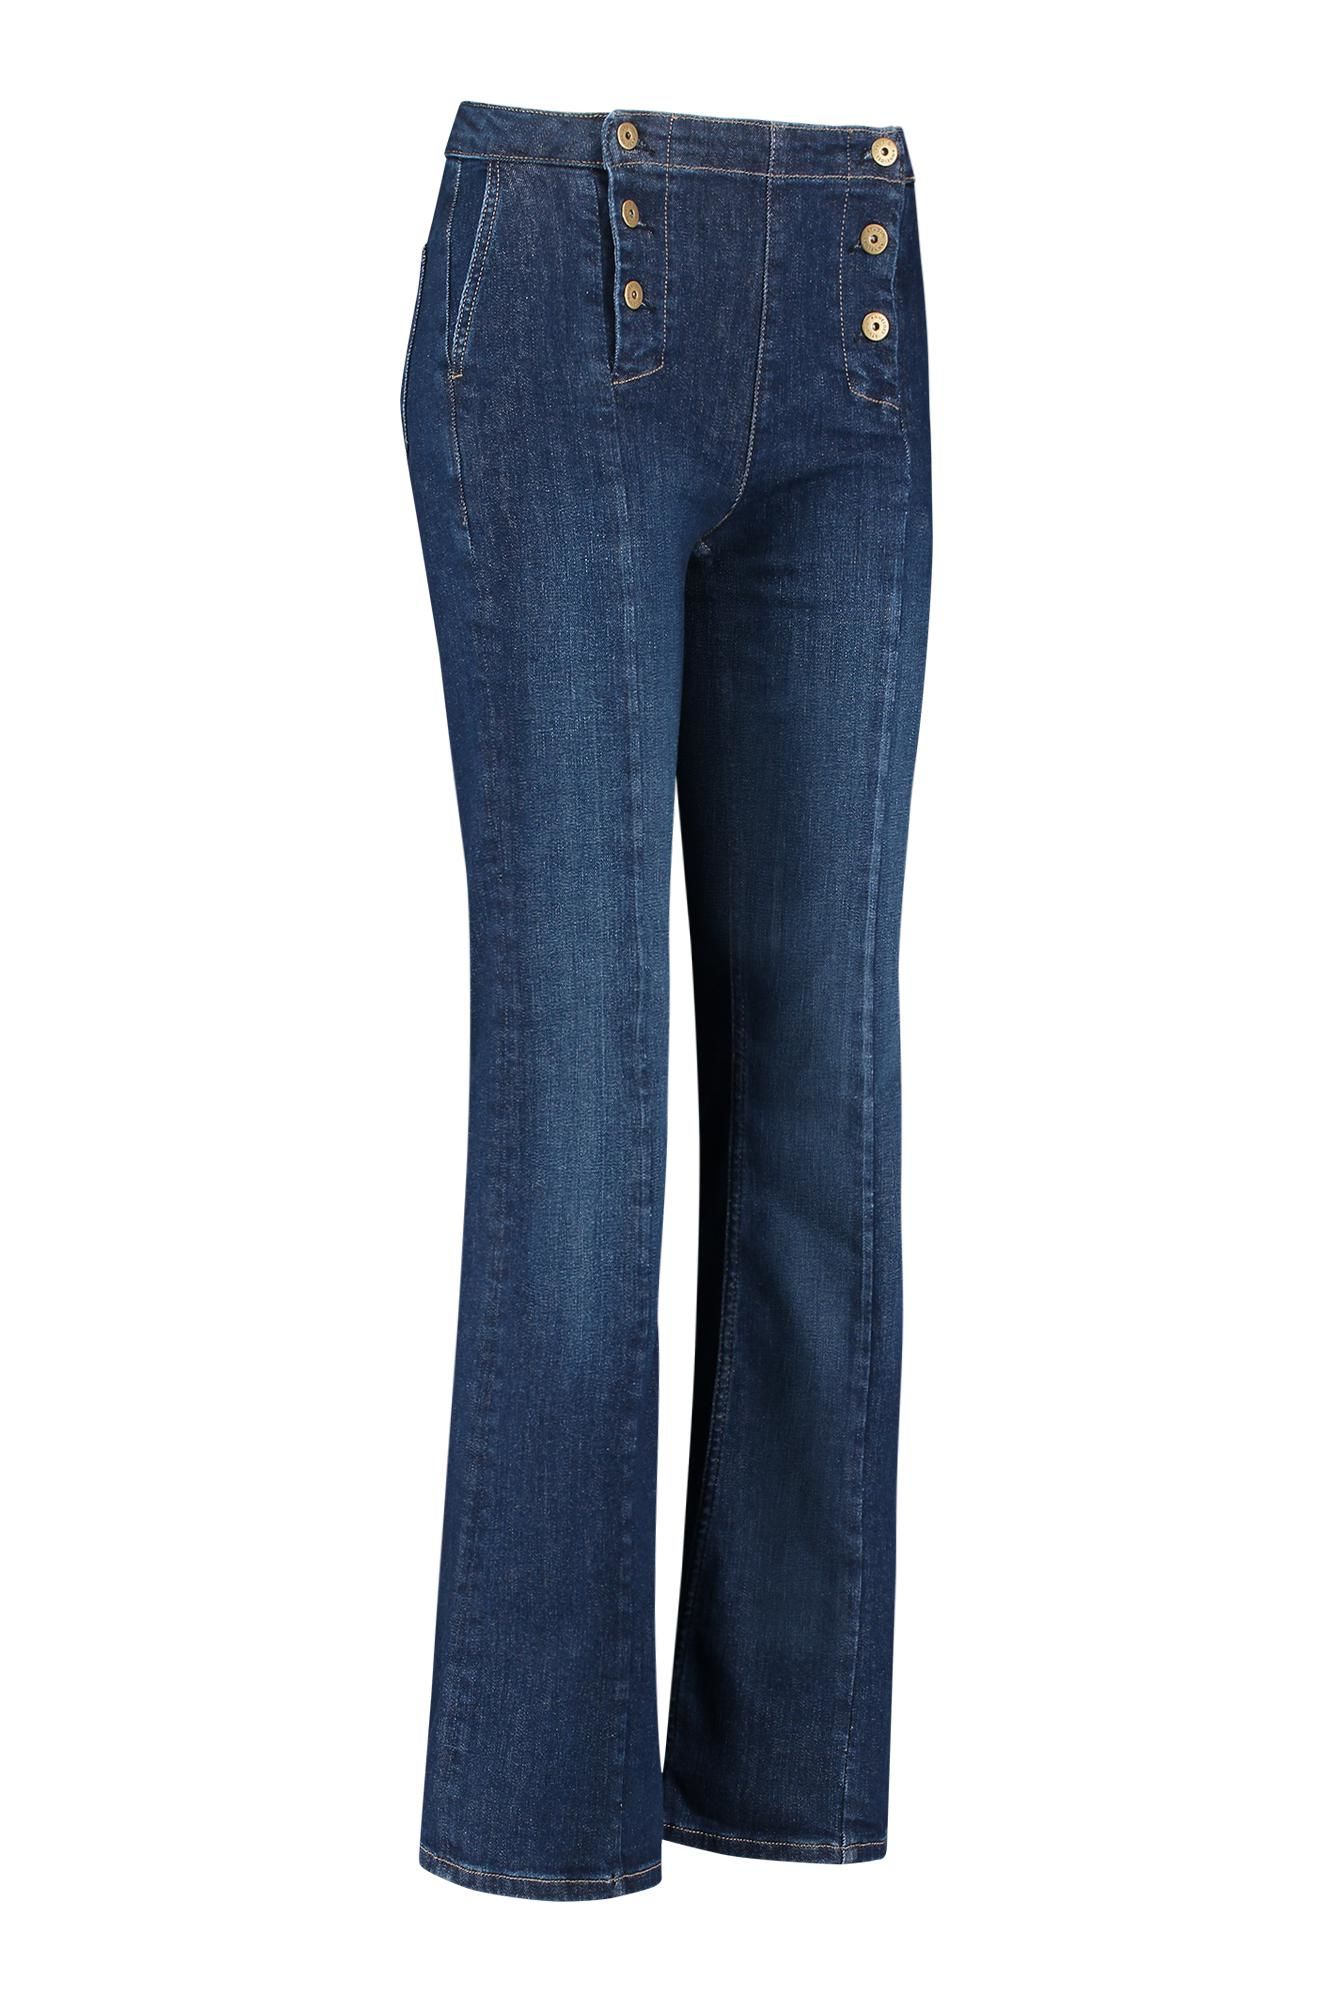 Studio Anneloes flare trousers 05400 jeans online kopen bij Fier Mode. 05400-6301 dark jean